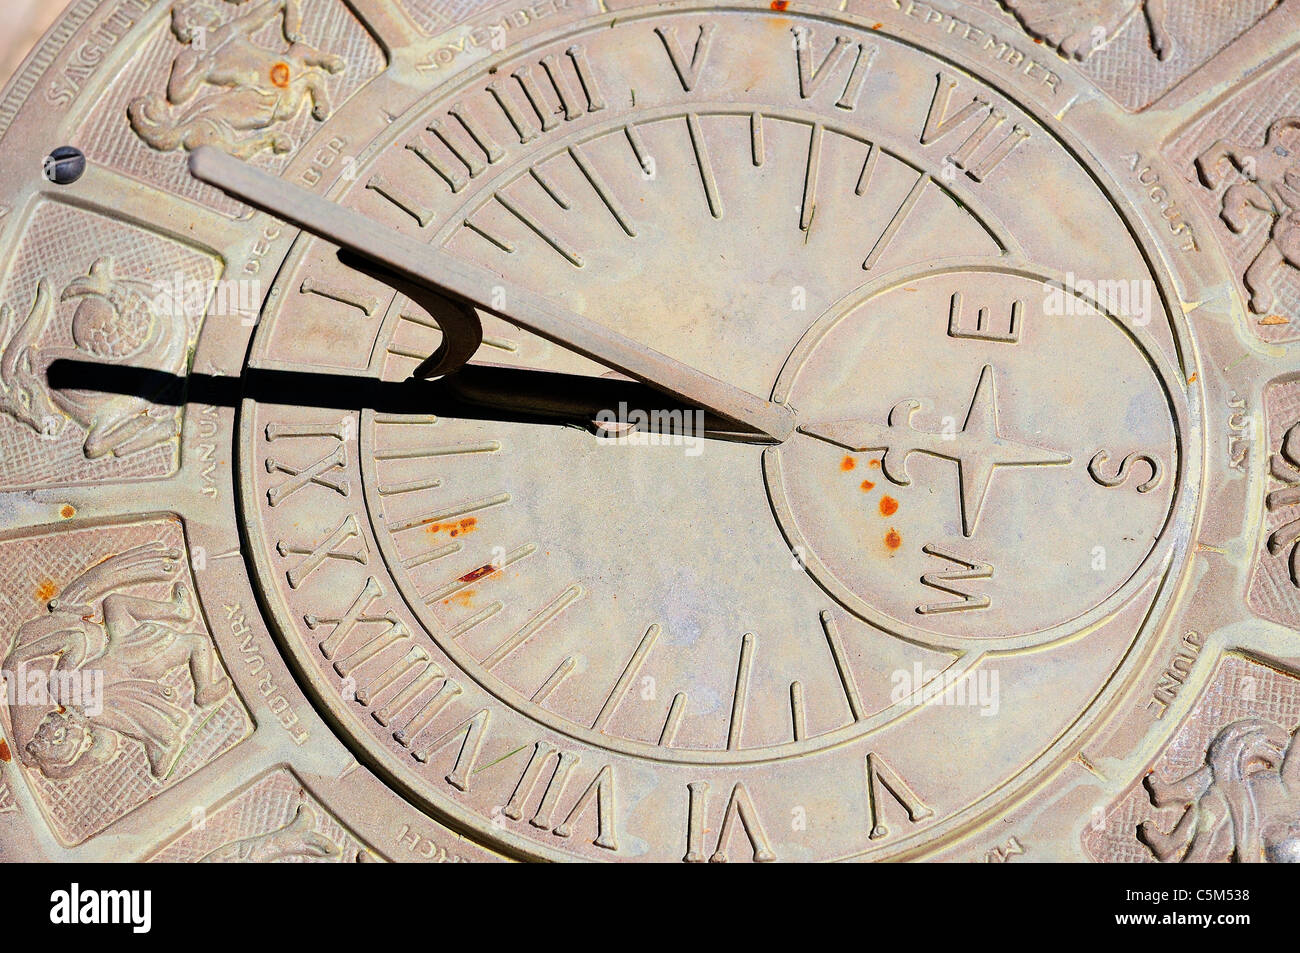 Orologio solare con segni zodiacali e figure che circonda il numero romano volte. Foto Stock